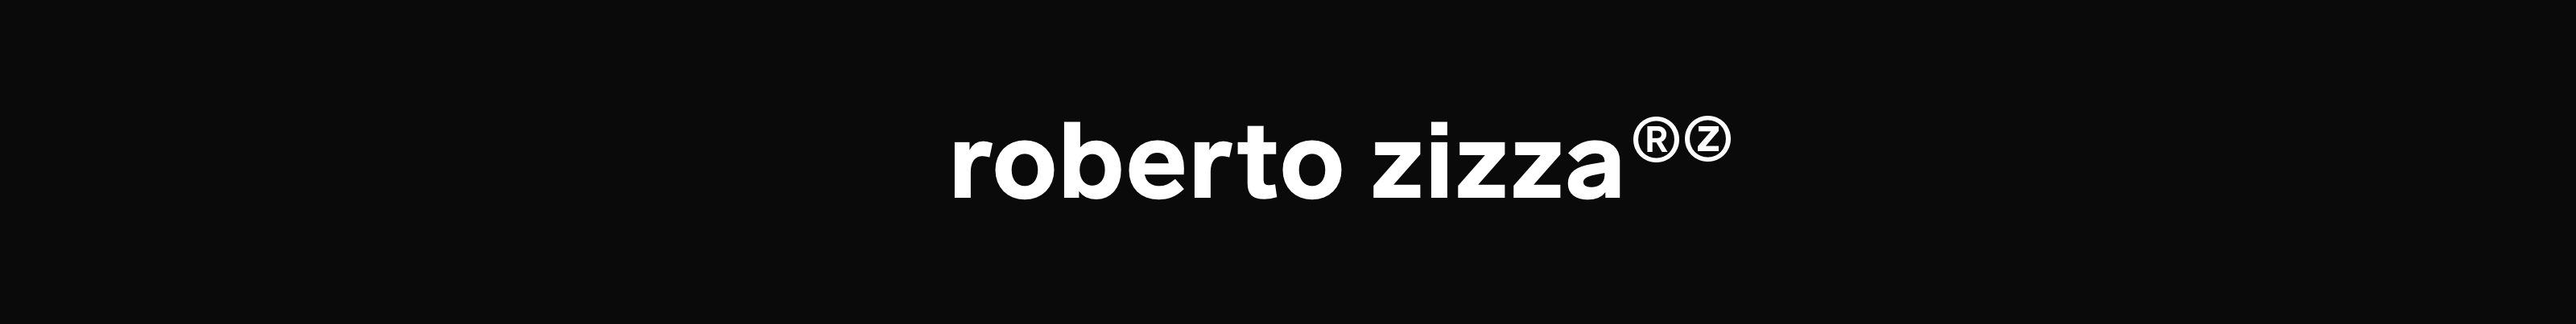 Roberto Zizza's profile banner